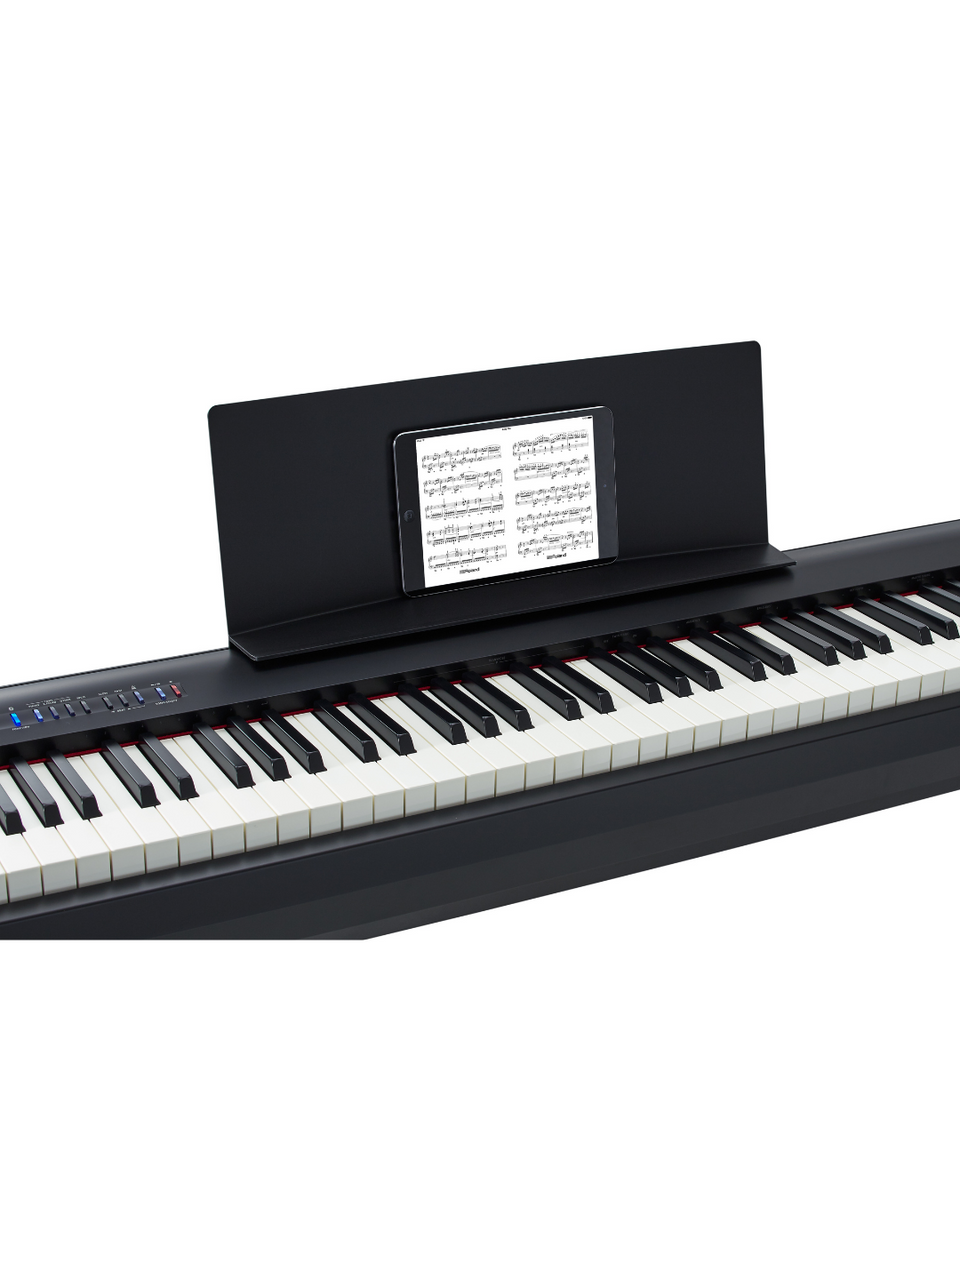 Roland FP-30X 88-Key Digital Piano - Black w/ Roland KSC-70 Stand